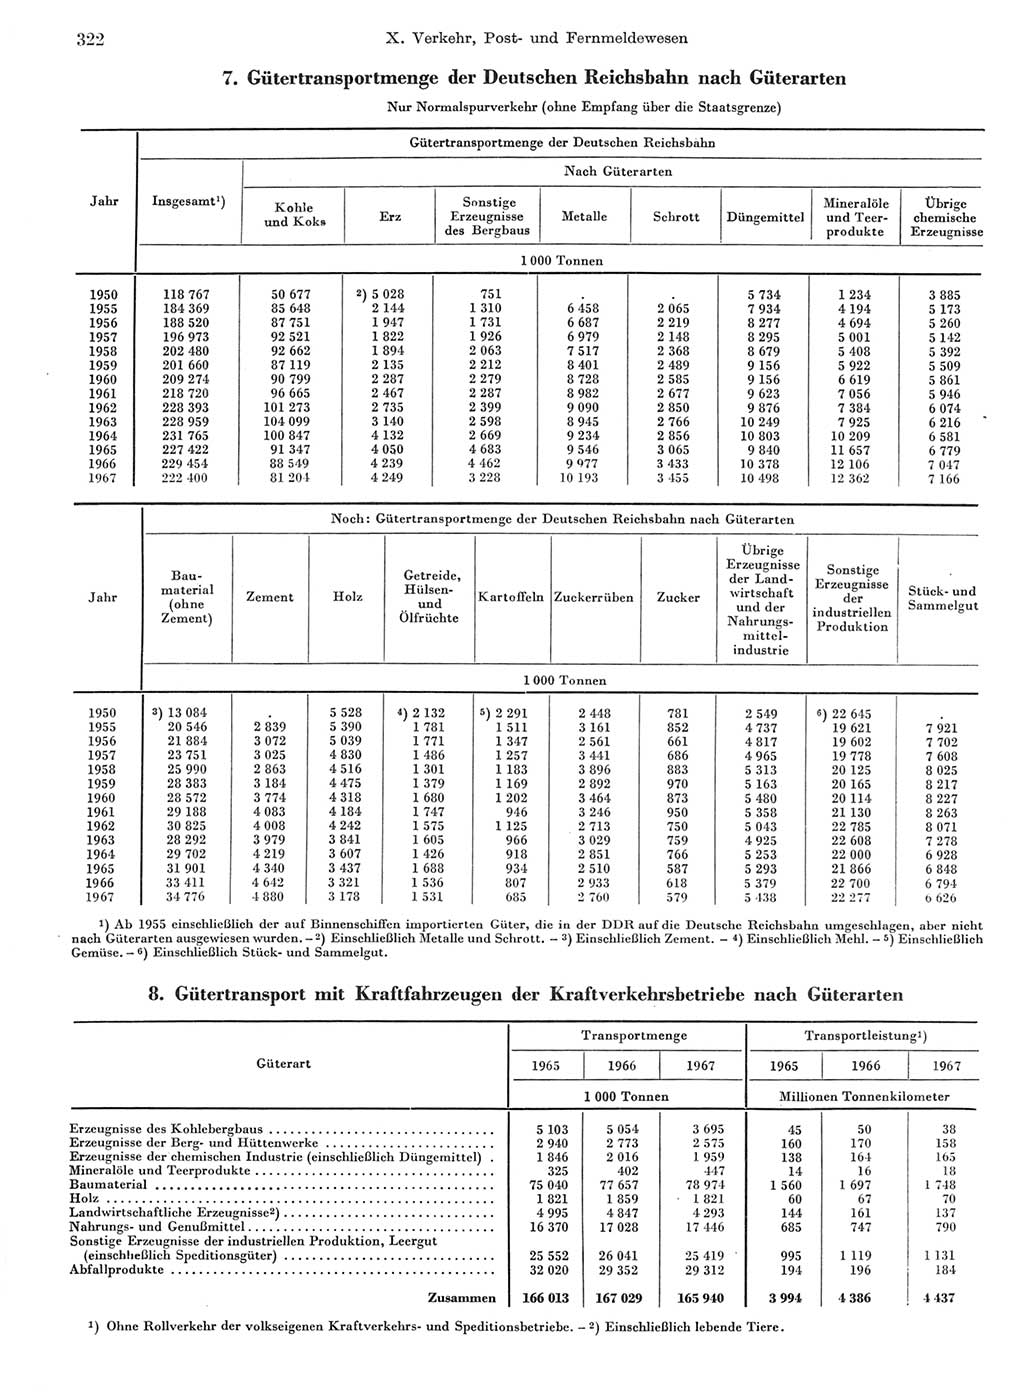 Statistisches Jahrbuch der Deutschen Demokratischen Republik (DDR) 1968, Seite 322 (Stat. Jb. DDR 1968, S. 322)